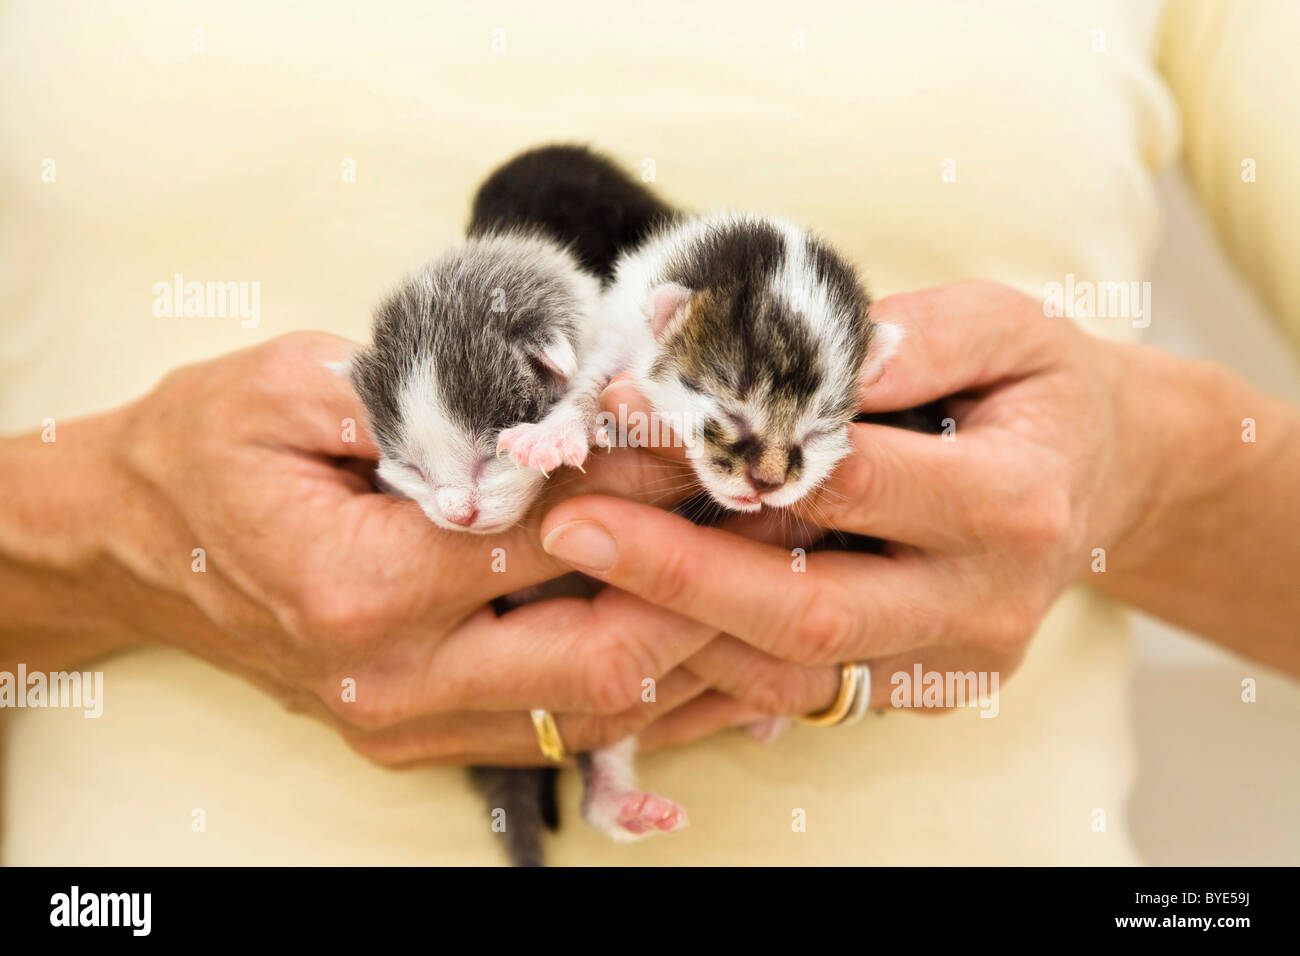 Three newborn kittens in woman's hand Stock Photo